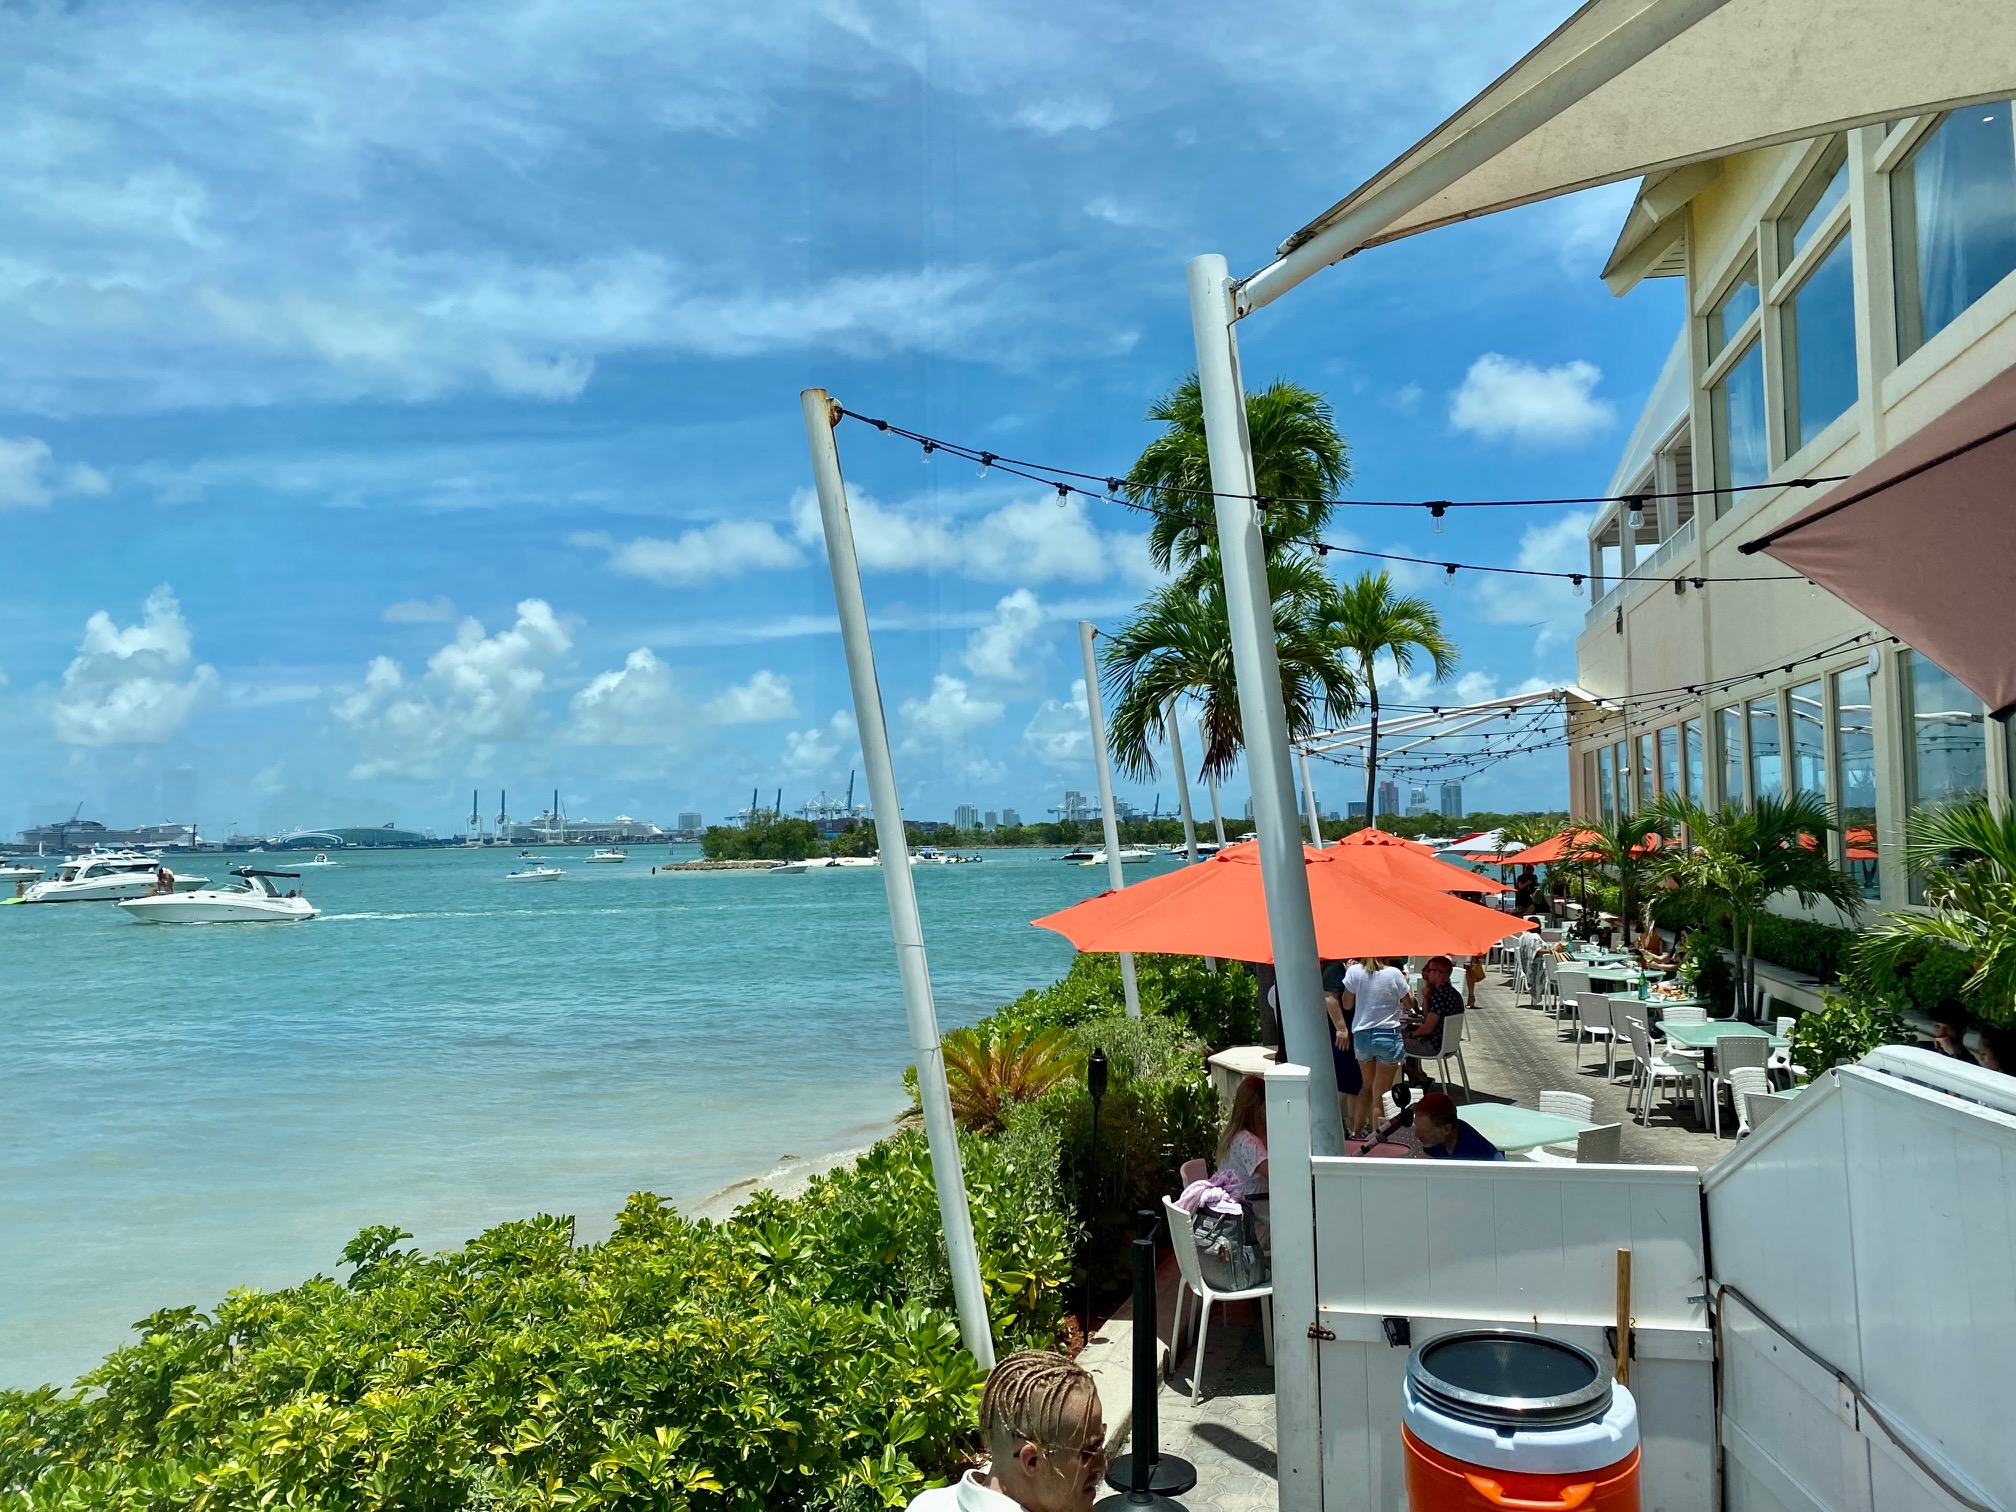 Restaurantes em Miami - Zuma - Ponto Miami - Ponto Miami